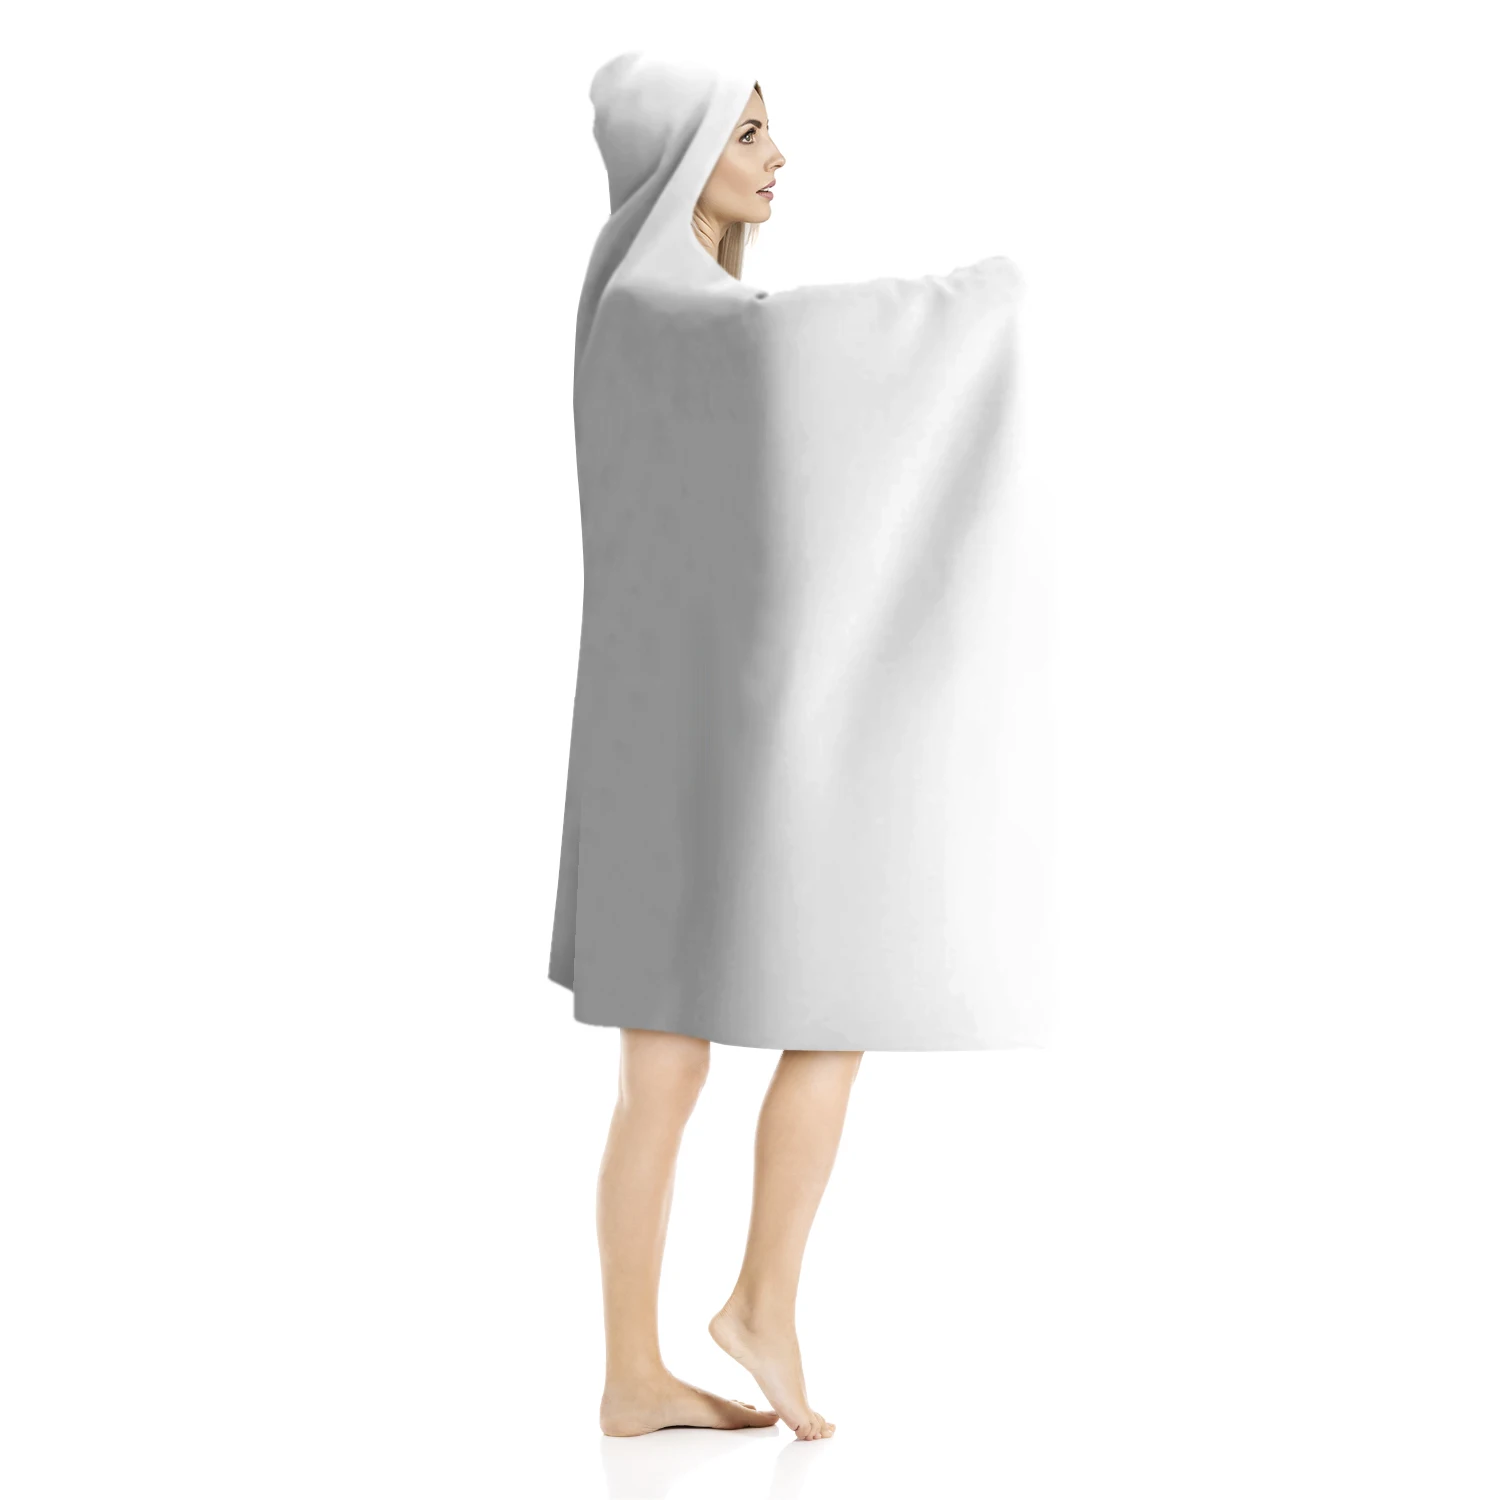 Popular custom supplier soft blanket polyester flannel hooded mandala blanket Starry sky winter wearable blanket